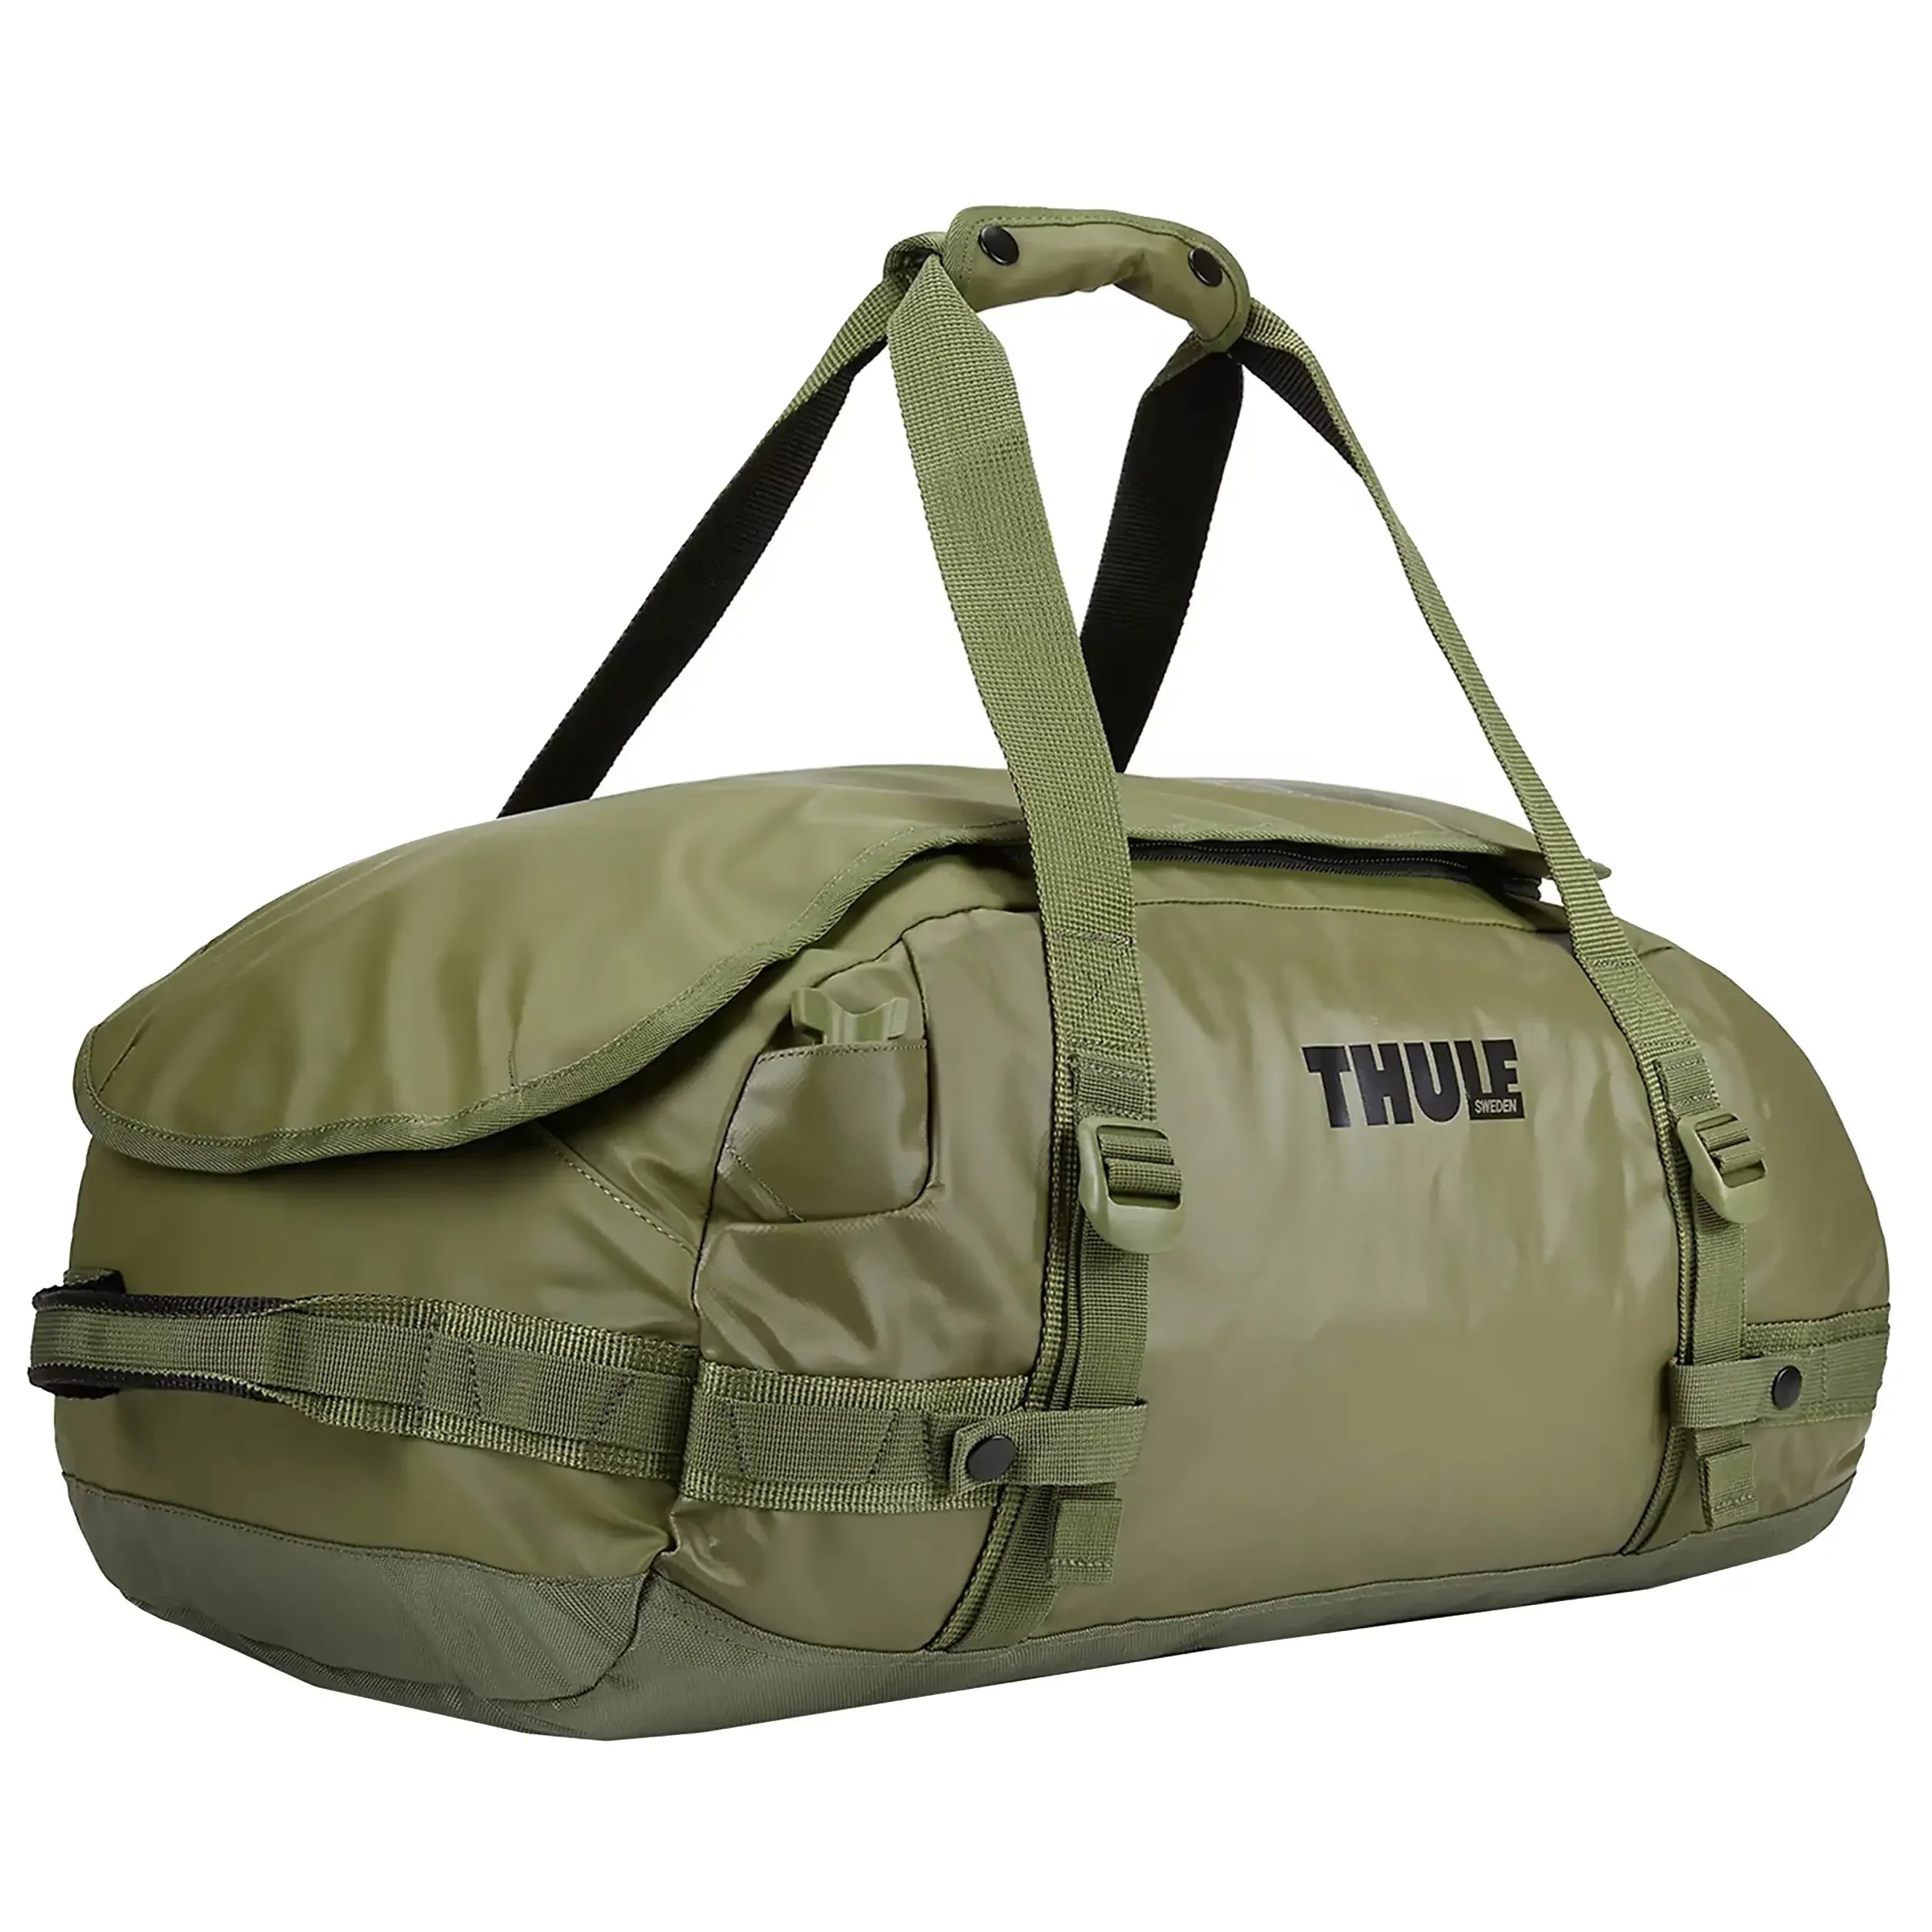 Thule Travel Chasm Travel Bag 56 cm - Olivine